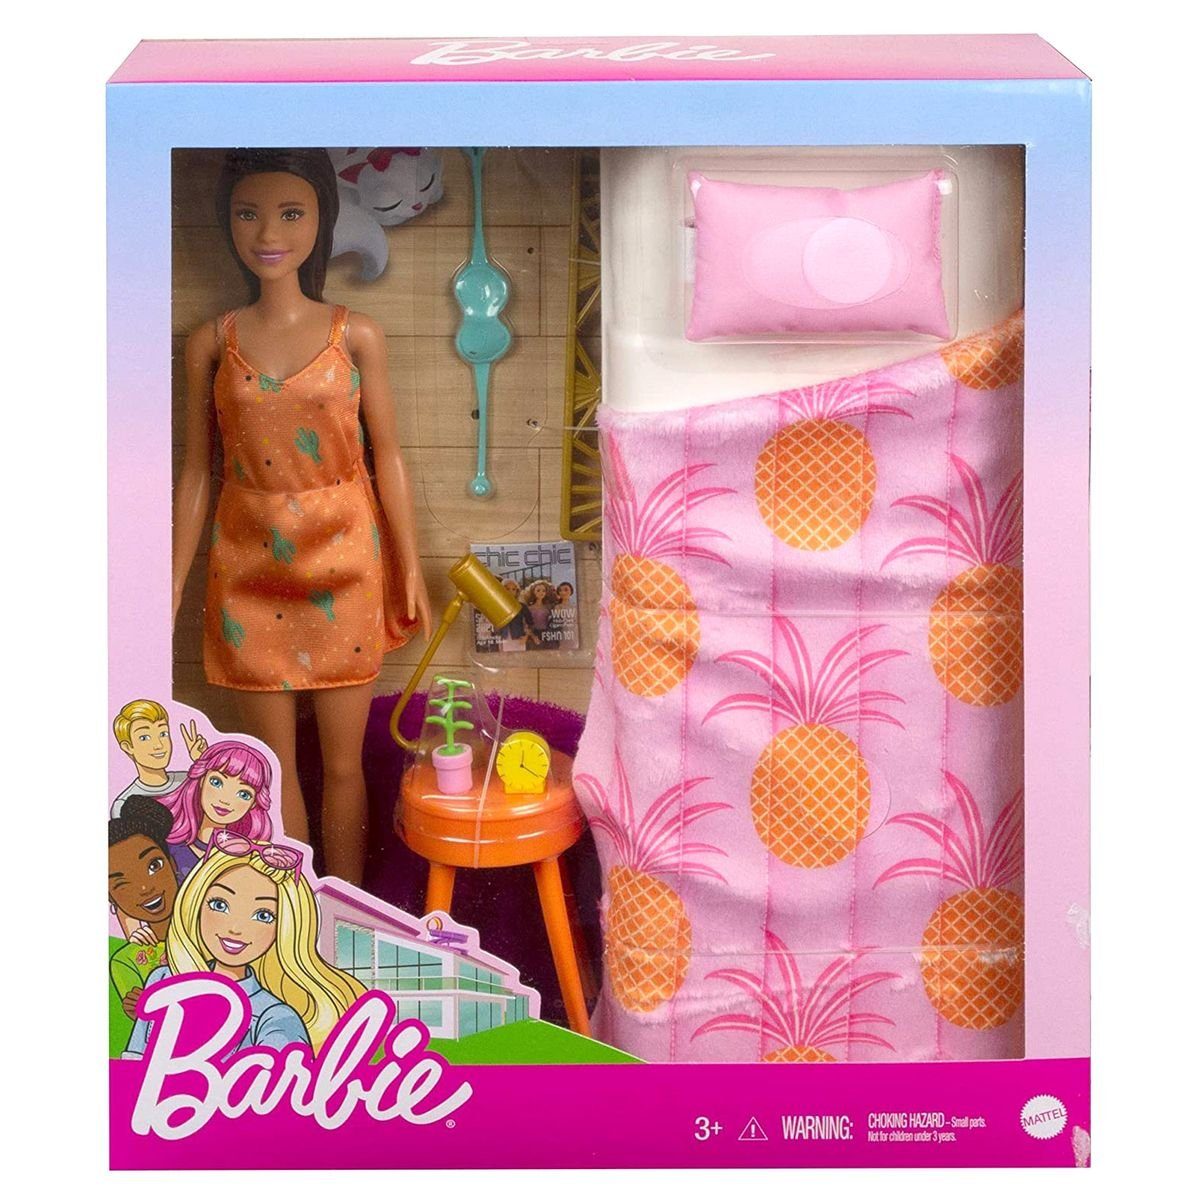 Mattel® Puppen Accessoires-Set Mattel GRG86 - Barbie